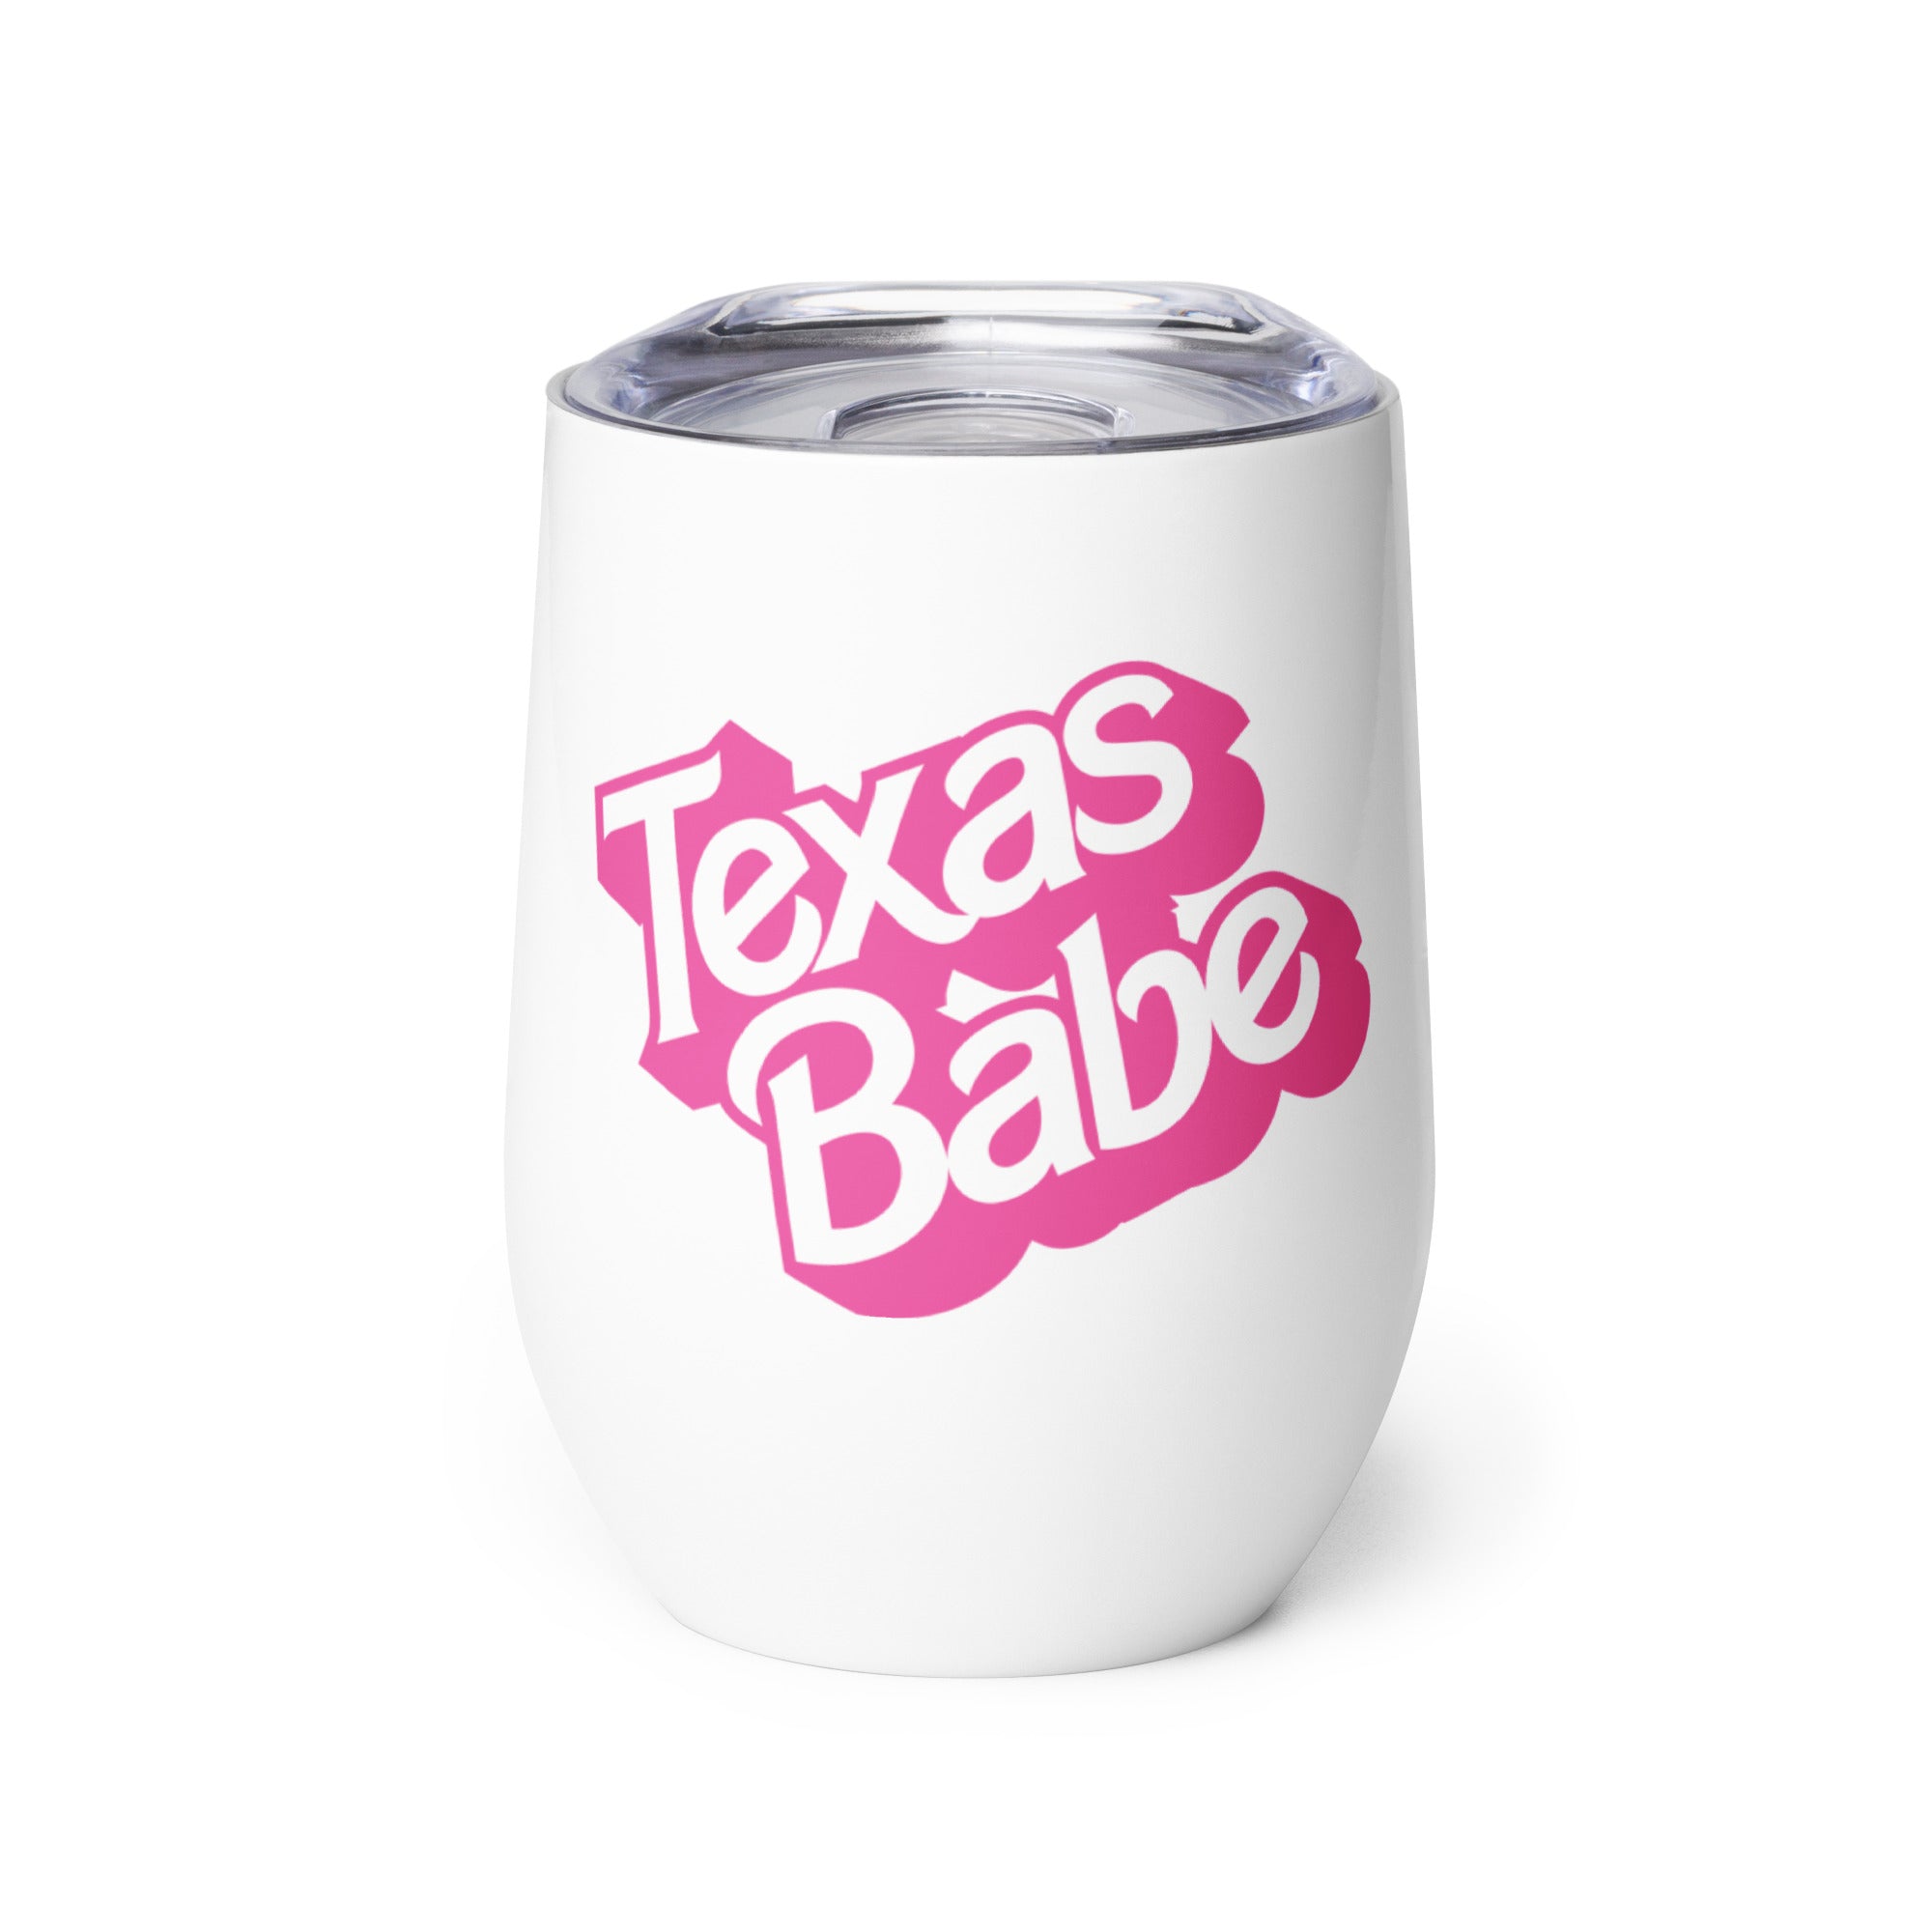 Texas Babe Wine Tumbler